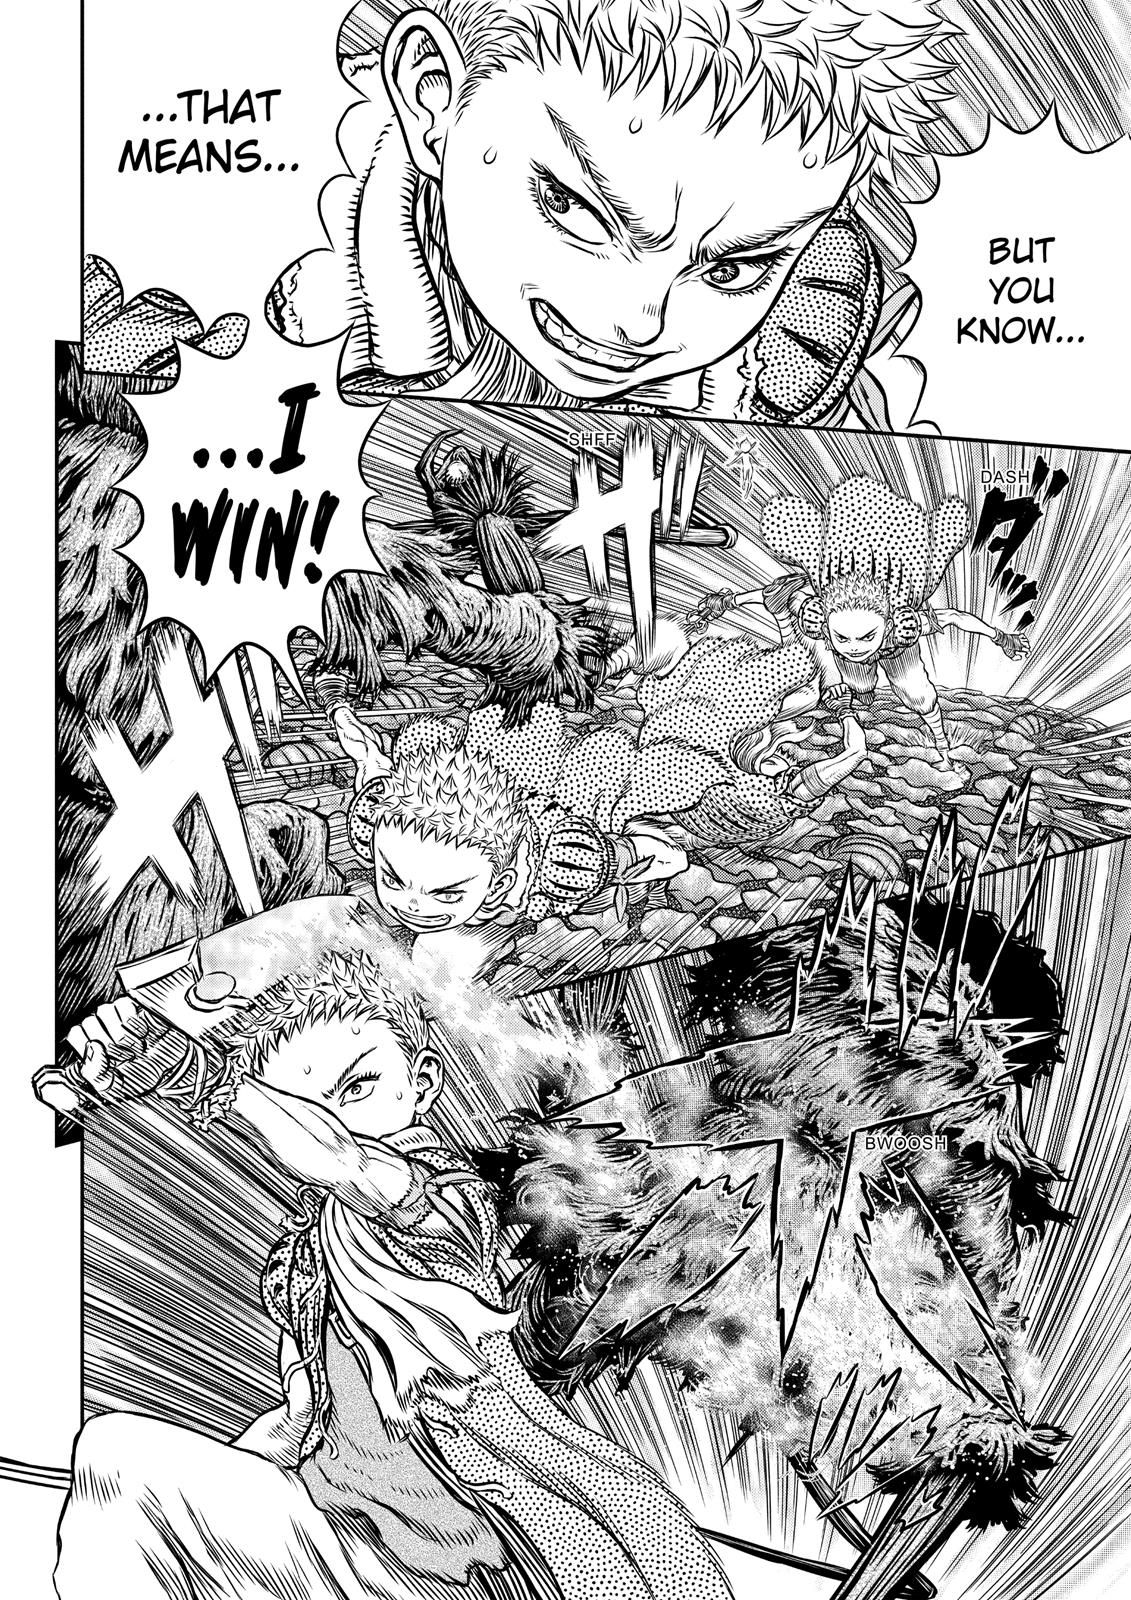 Berserk Manga Chapter 343 image 13